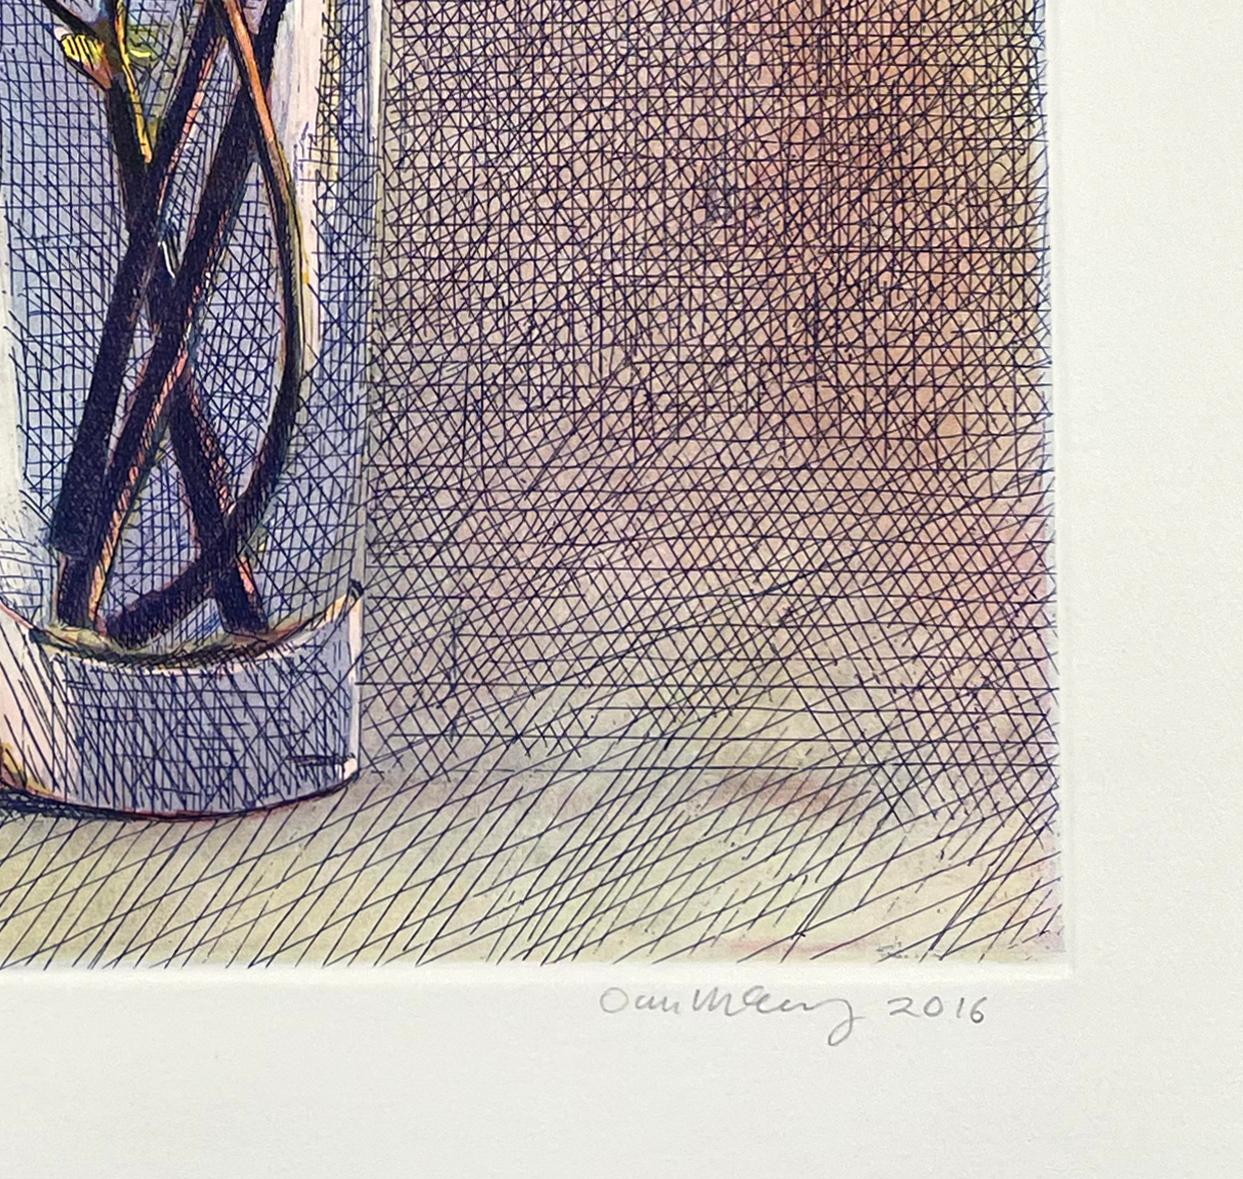 Médium : Eau-forte et aquatinte
Année : 2016
Taille de l'image : 15.5 x 11.5 pouces
Édition de 25 exemplaires, signés et titrés par l'artiste.

Lilas dans un vase en verre simple avec des reflets.

M. McCleary est né à Santa Monica, en Californie.